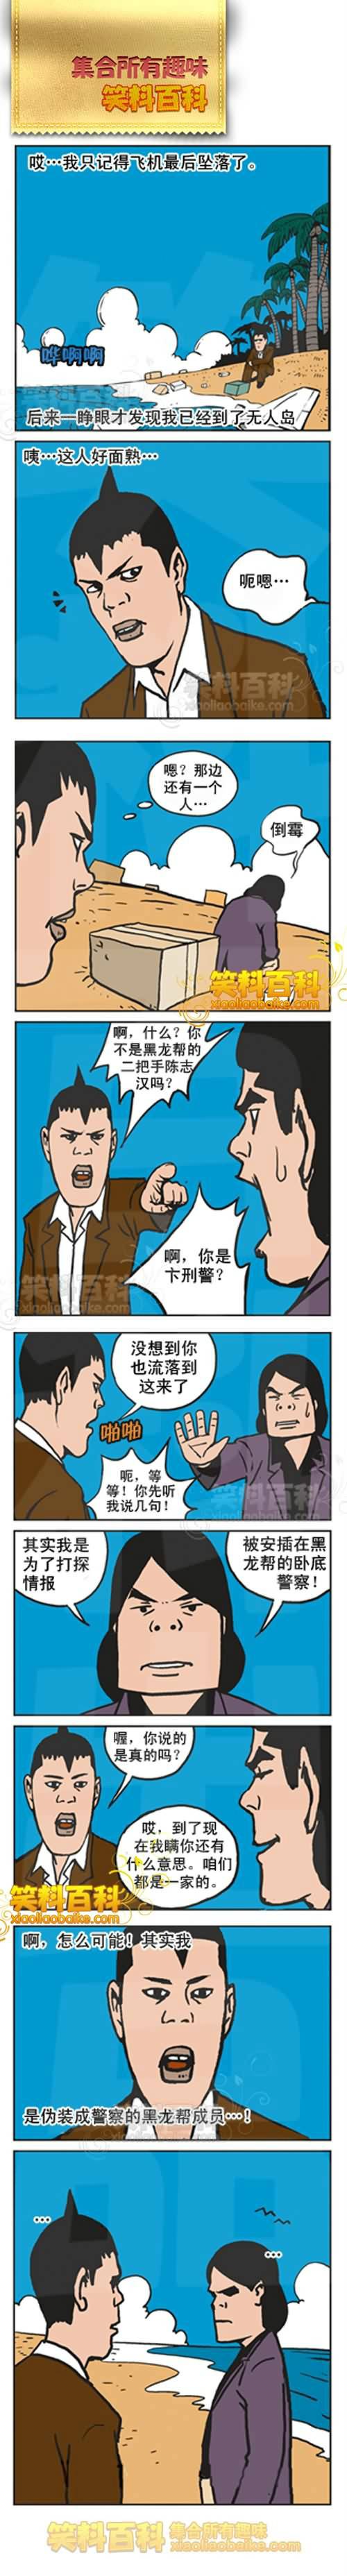 邪恶漫画爆笑囧图第259刊：师傅打扮后的秘密